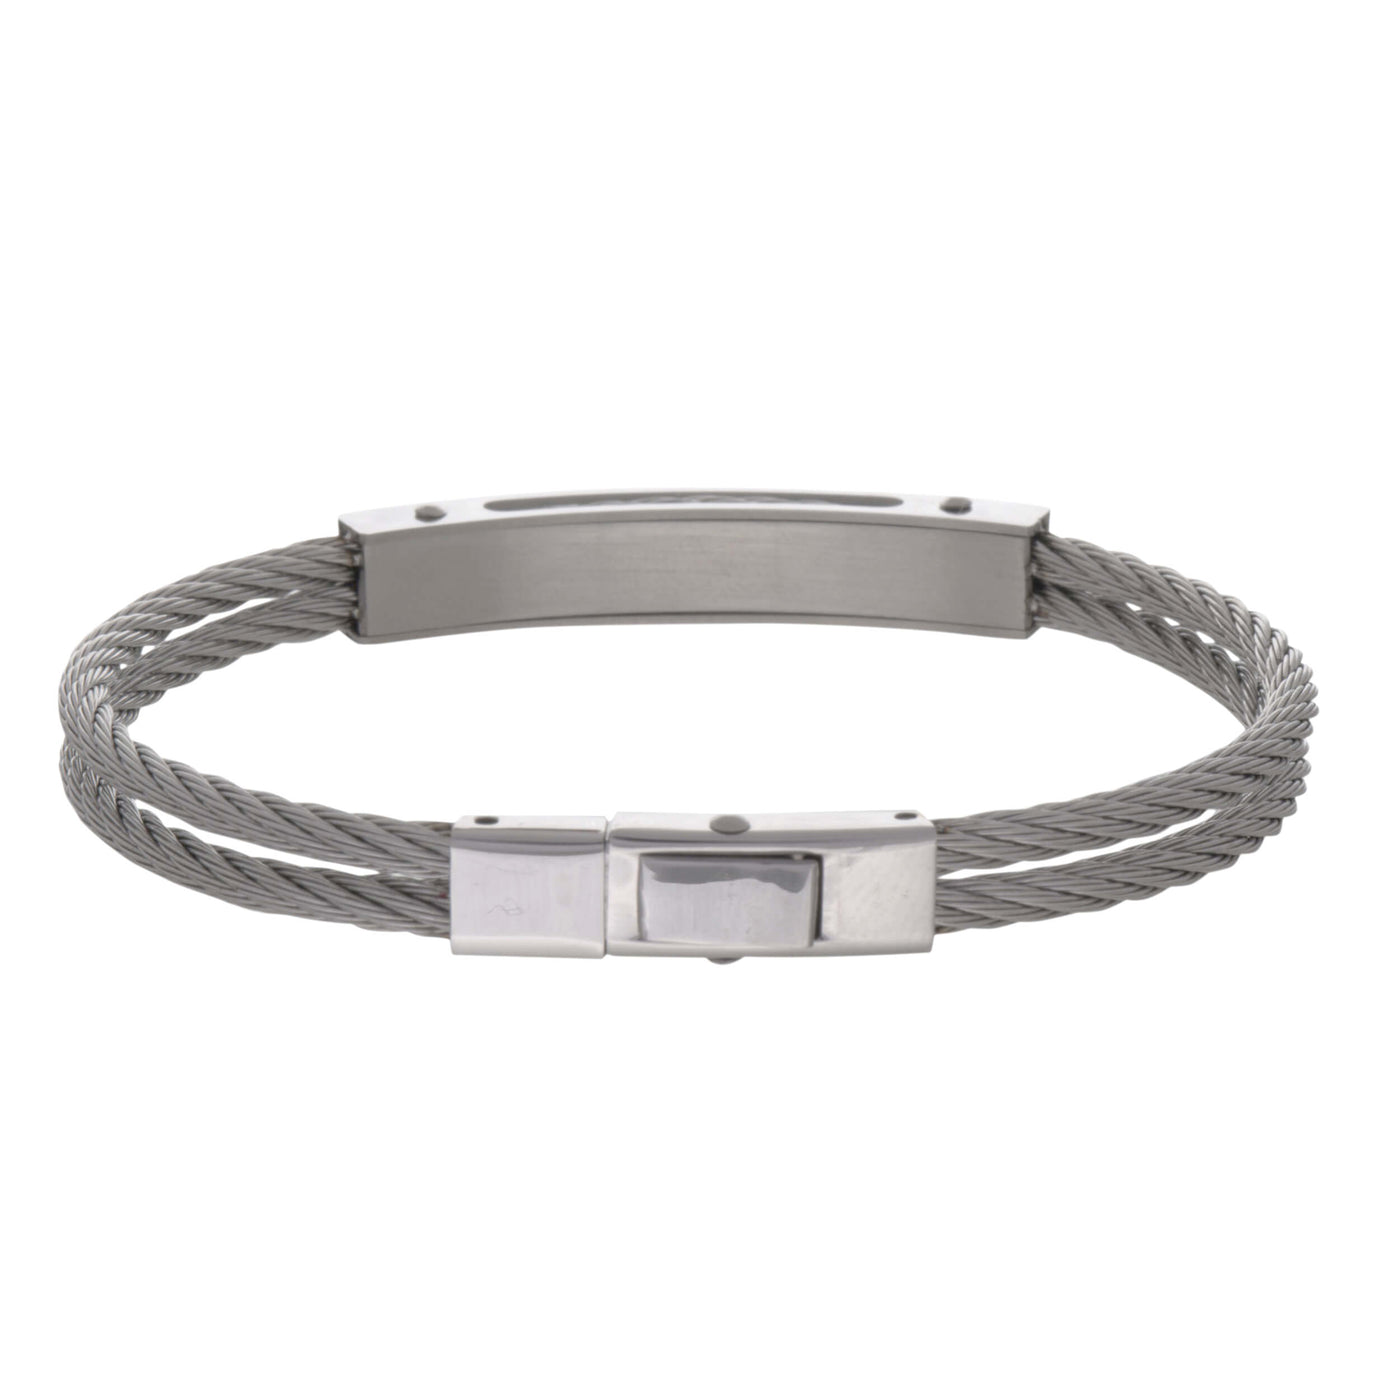 Steel wire bracelet with bracelet plate (steel 316L)